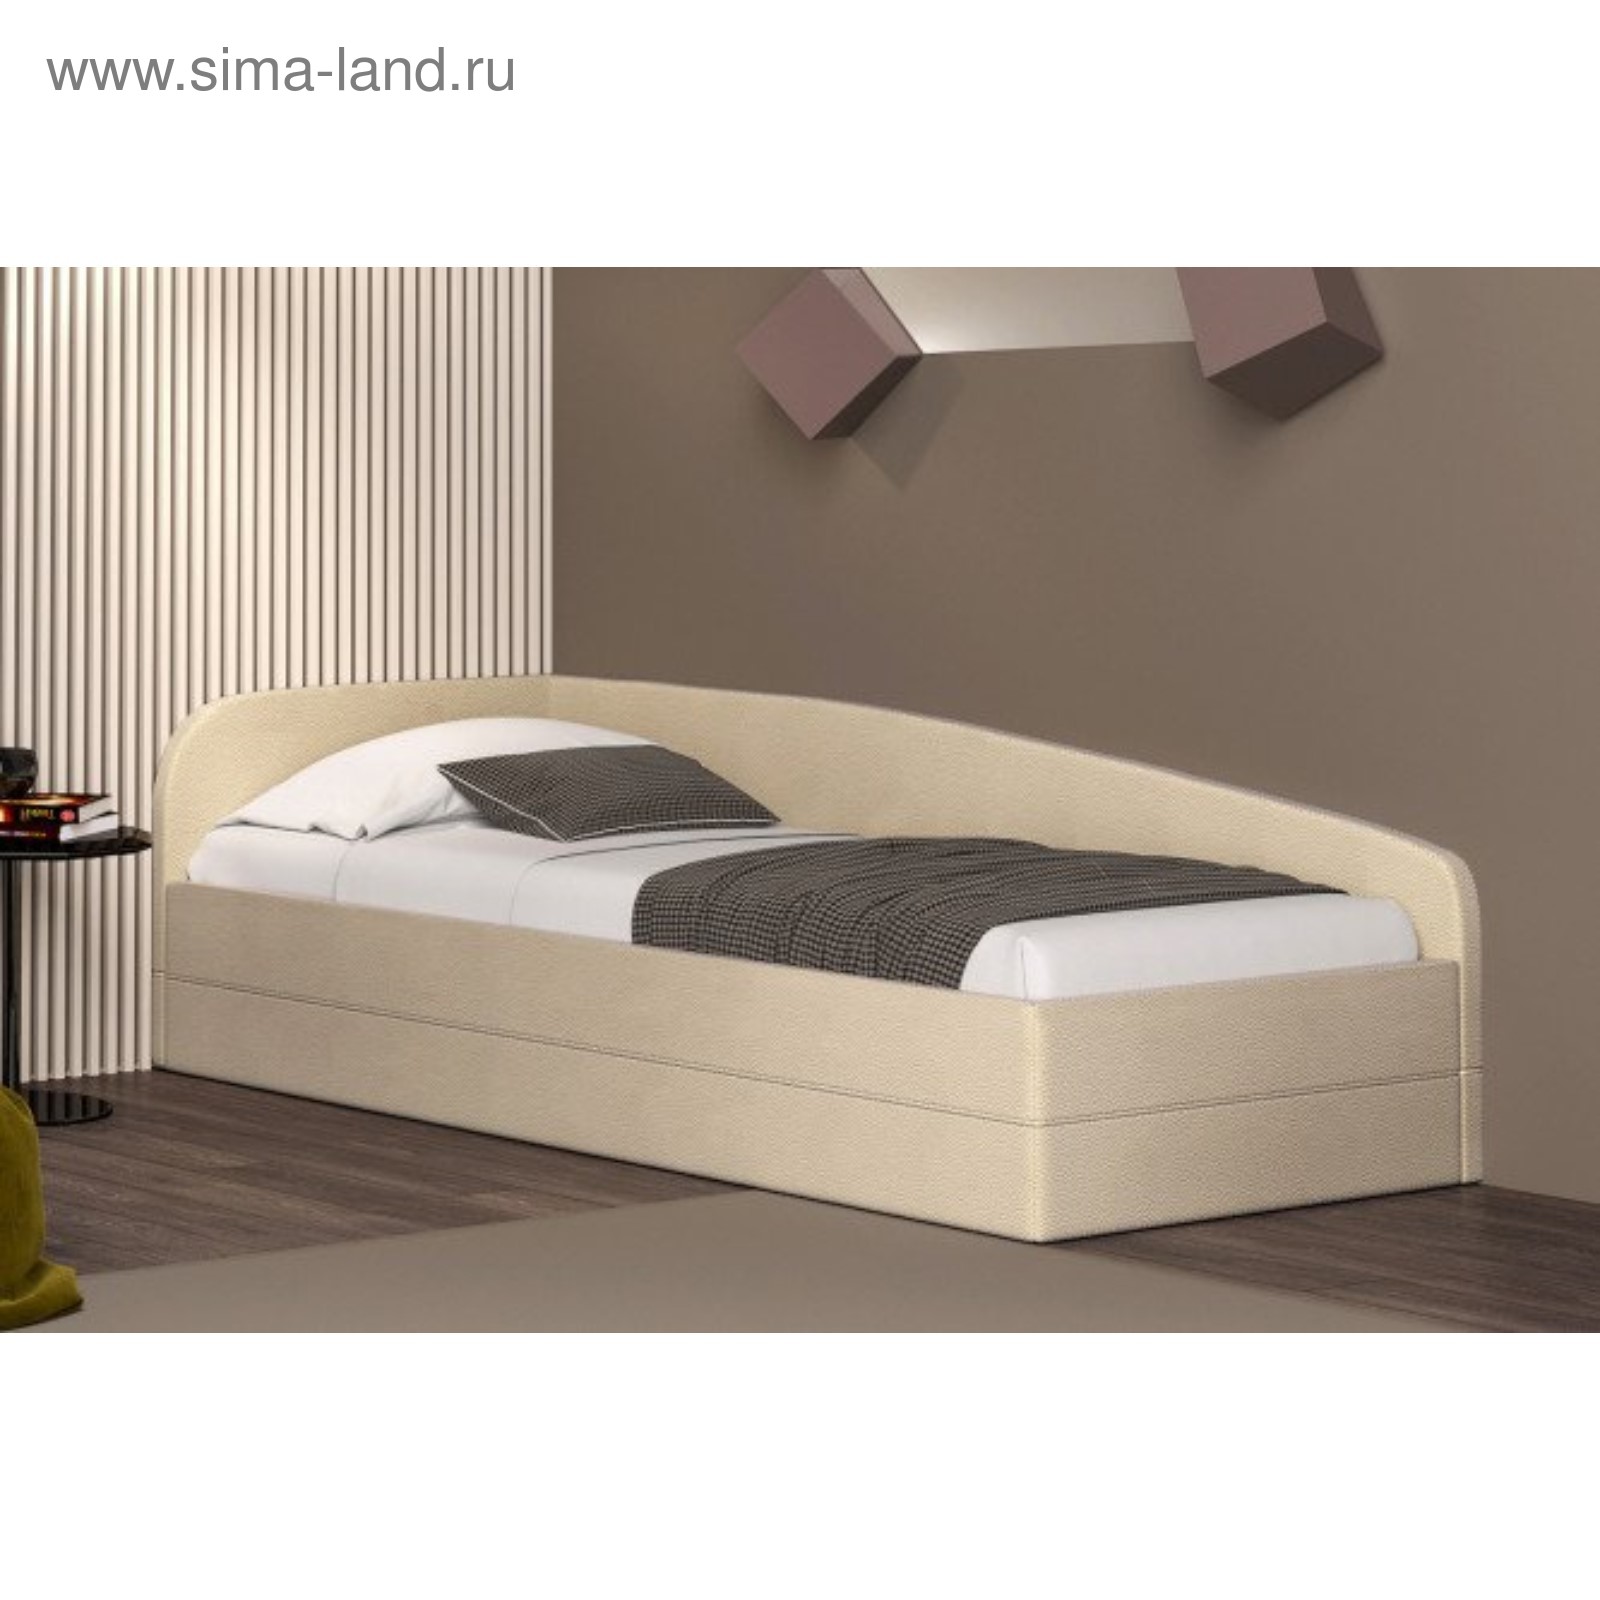 Кровать Дрим с подъемным механизмом 100х200